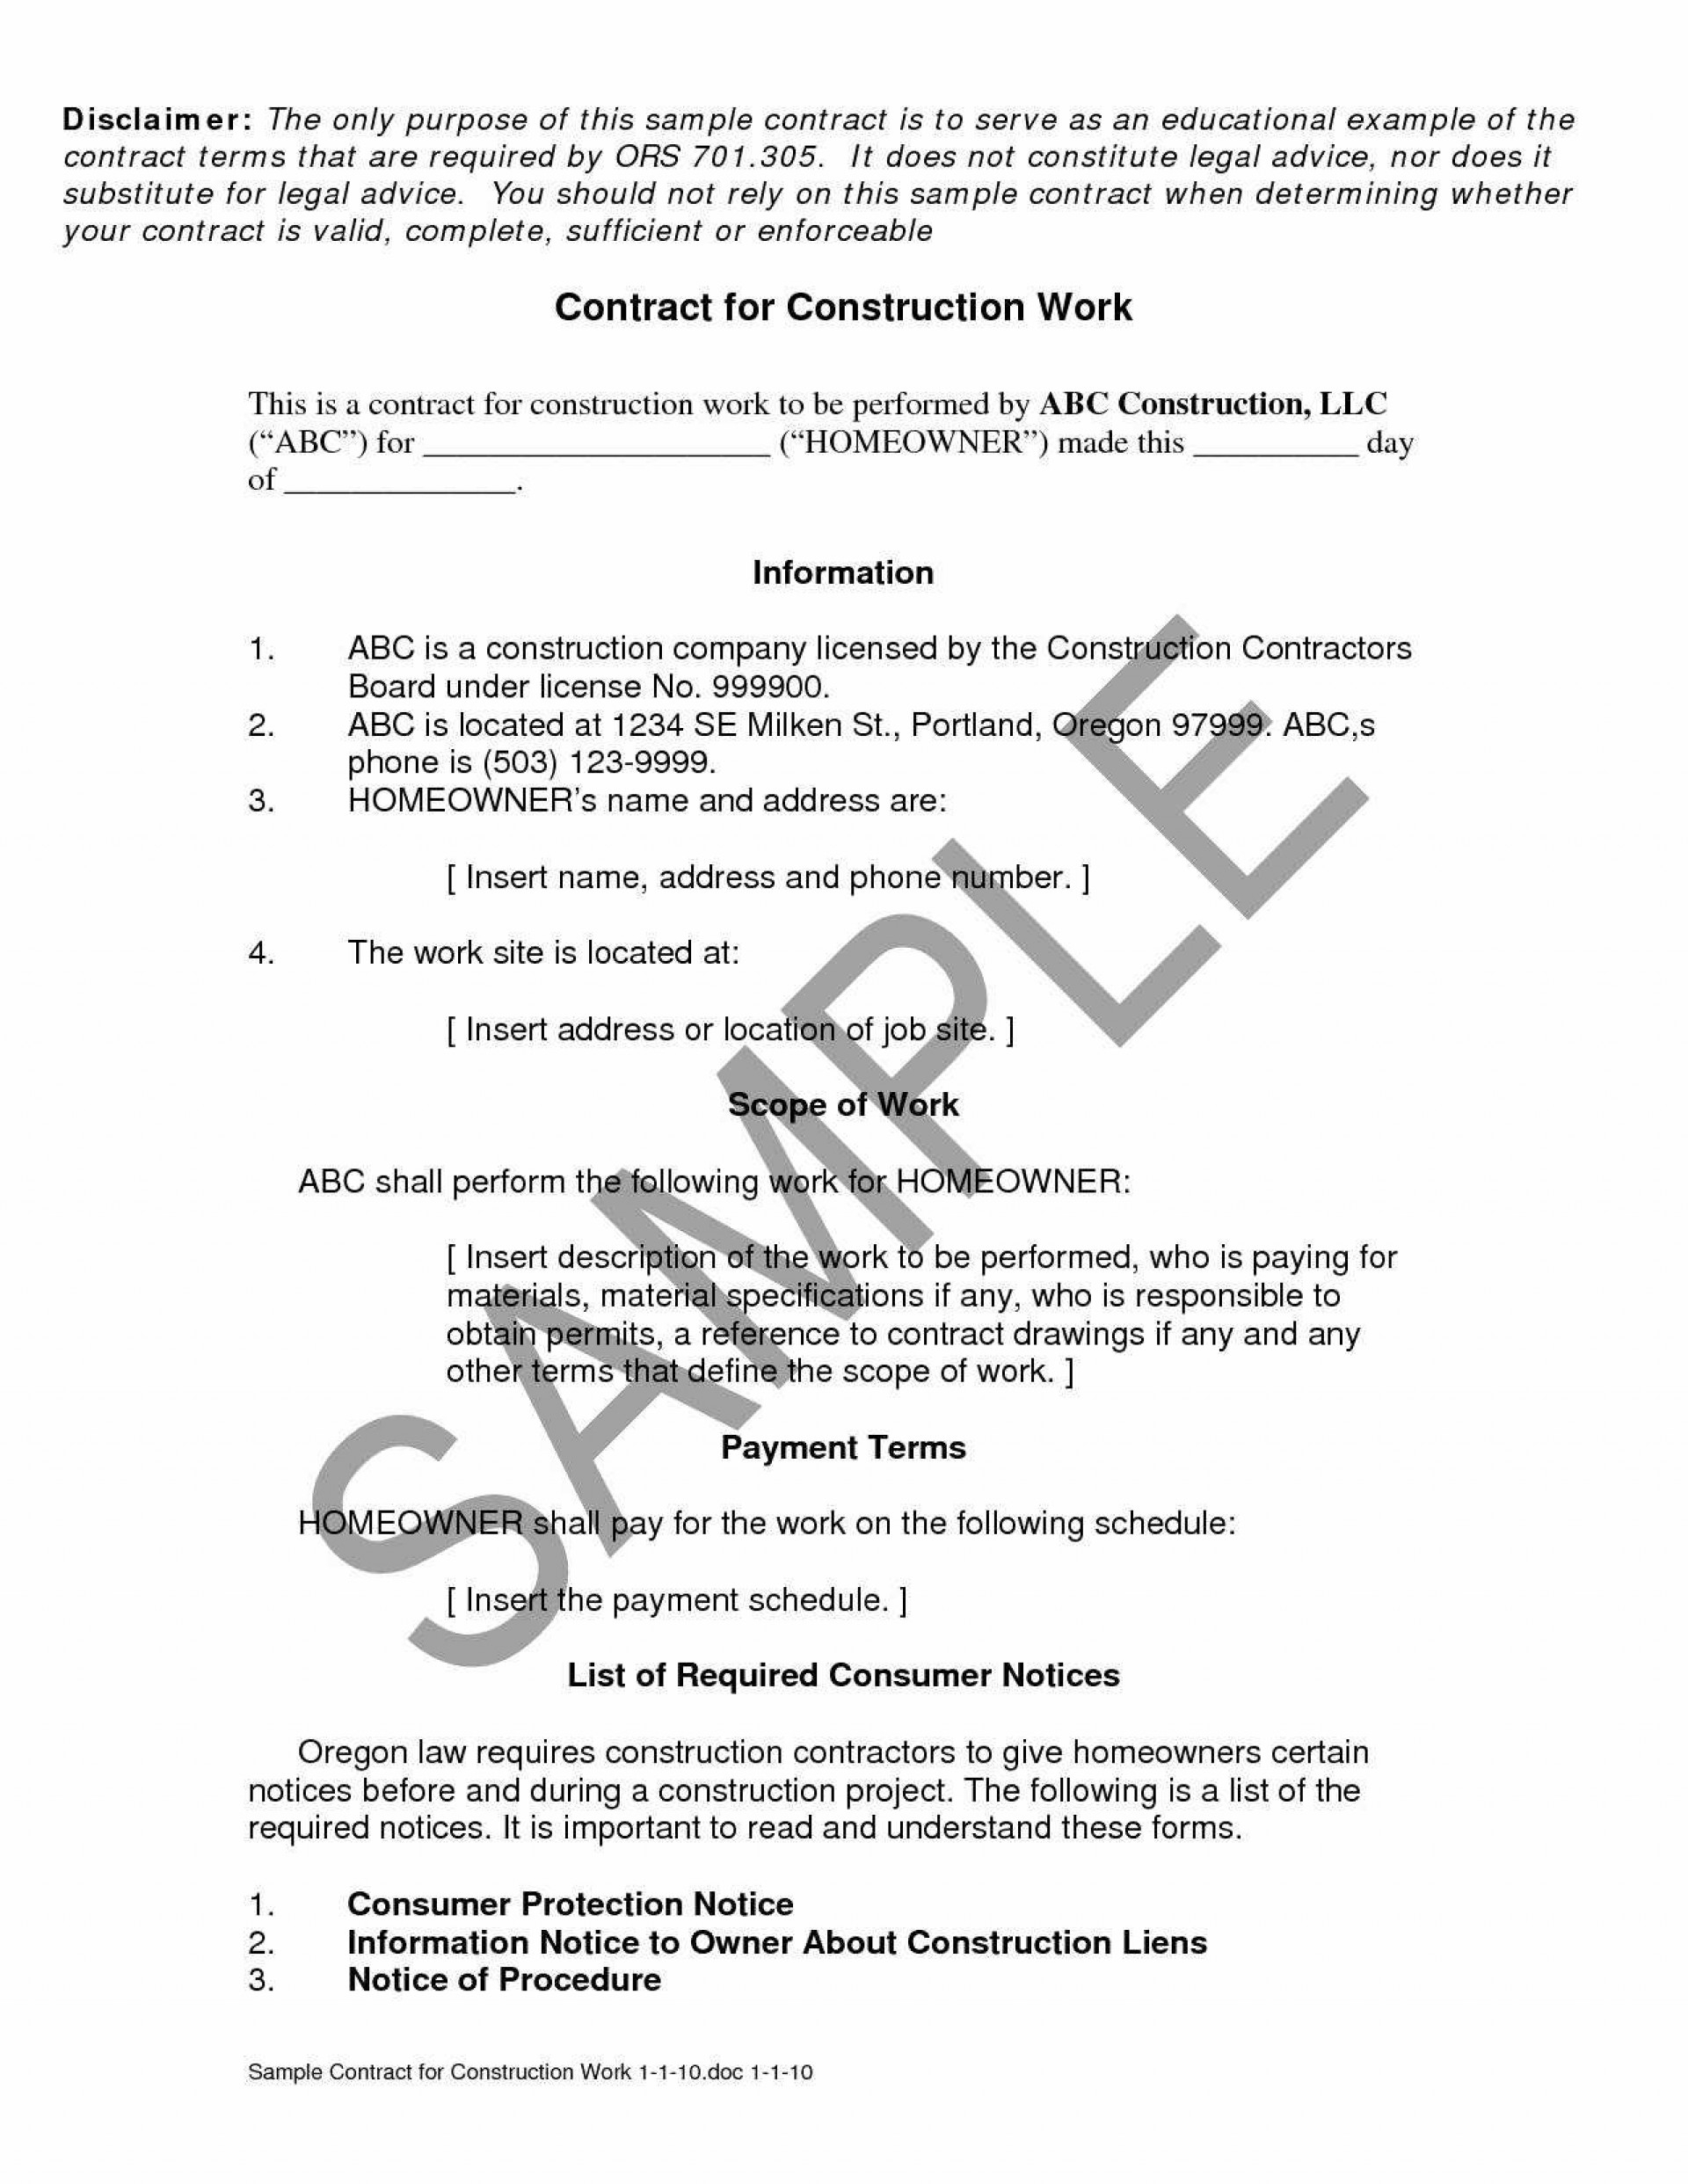 Licensing Agreement Term Sheet 024 Executive Employment Agreement Checklist Best Of Term Sheet